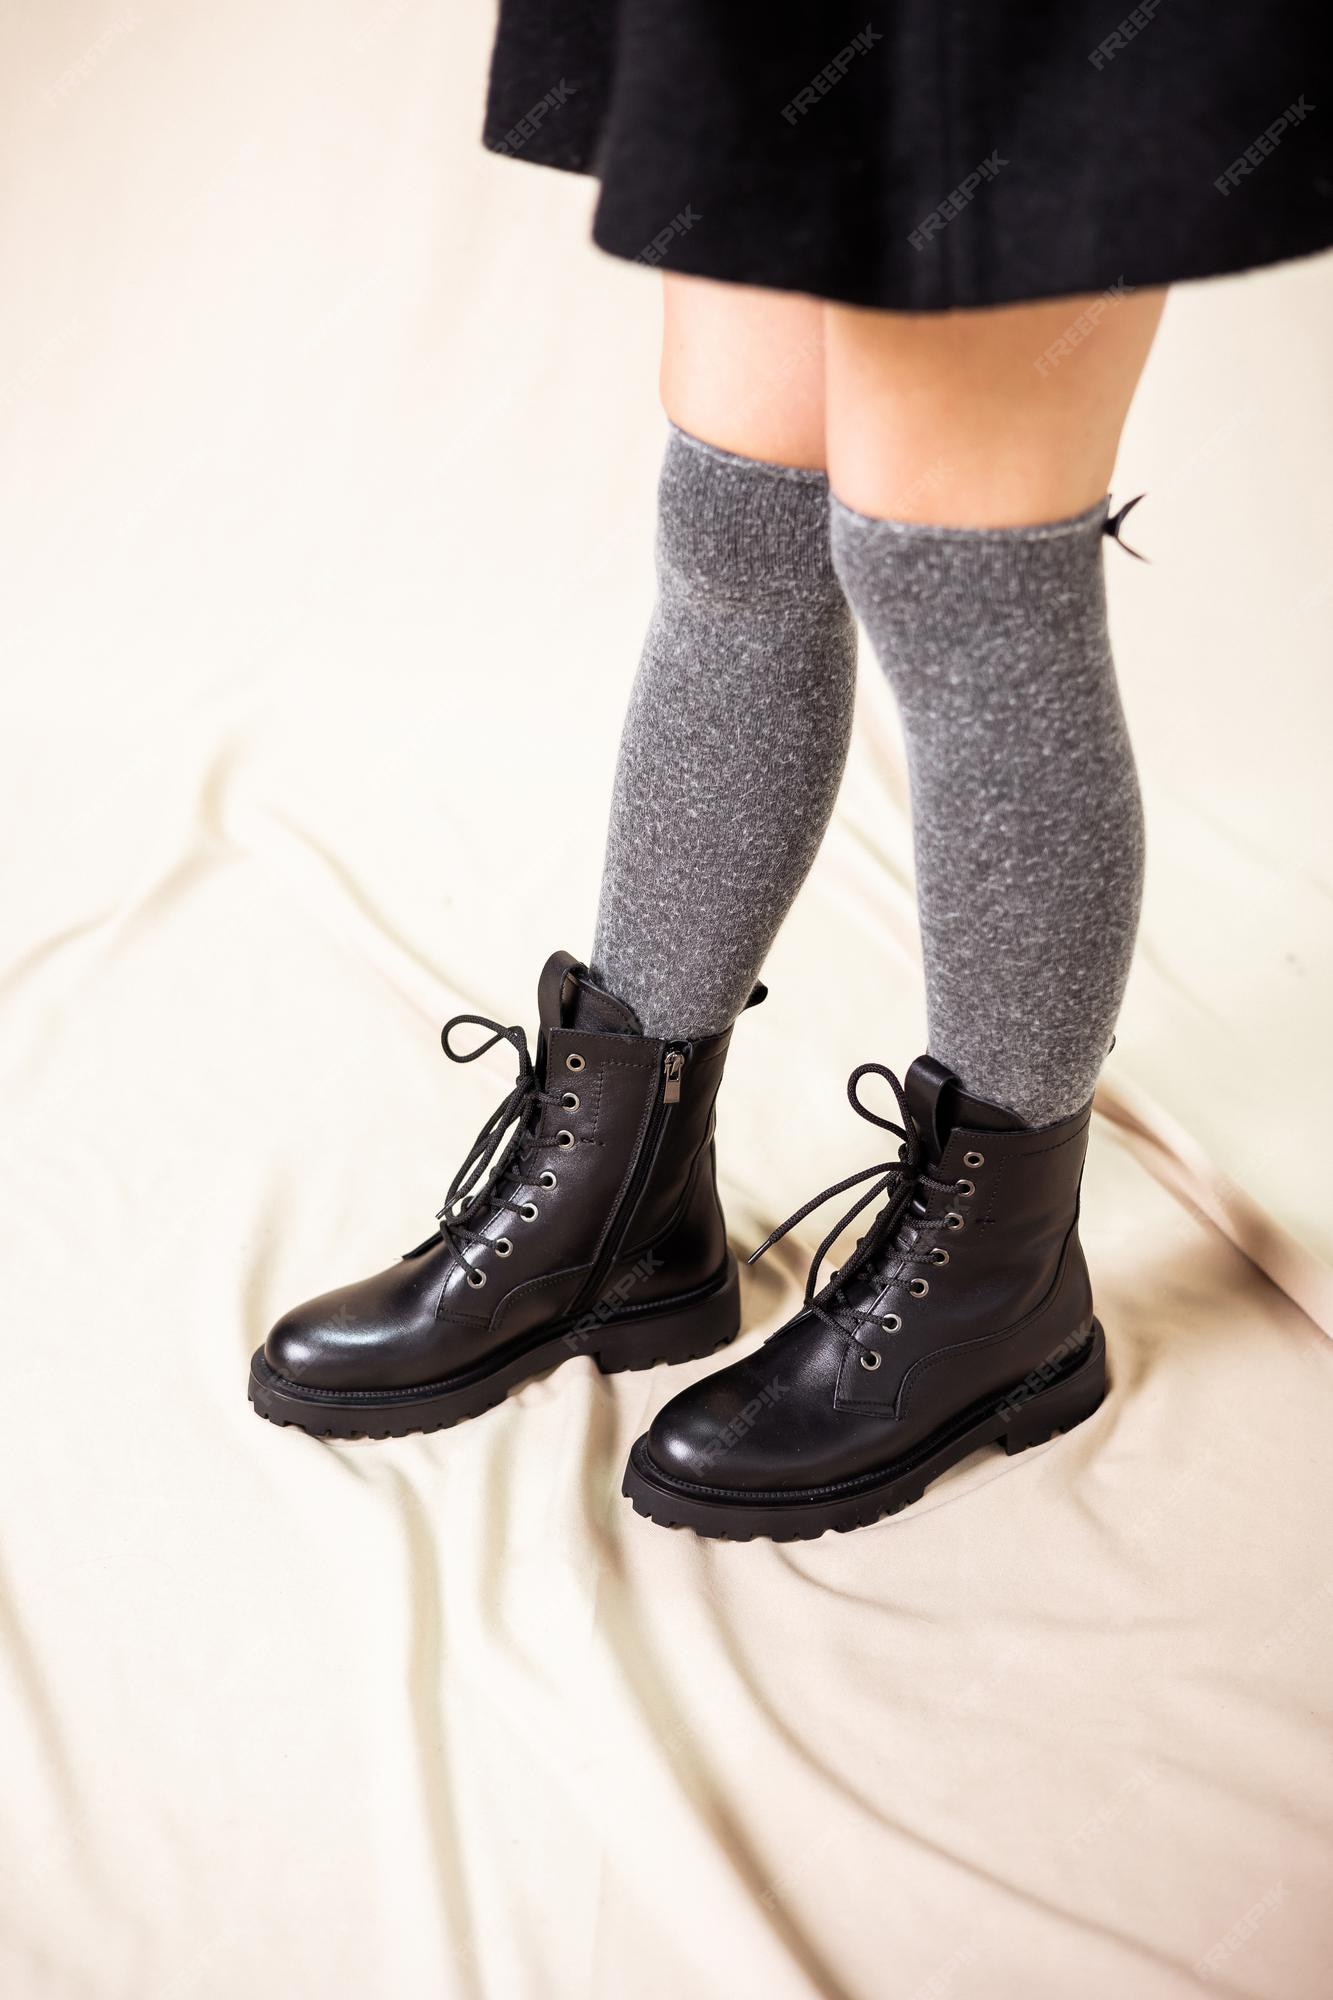 Botas mujer negras fabricadas en piel auténtica. nueva colección zapatos de invierno niñas con estilo. botas de cuero con estilo para mujer de moda. | Foto Premium